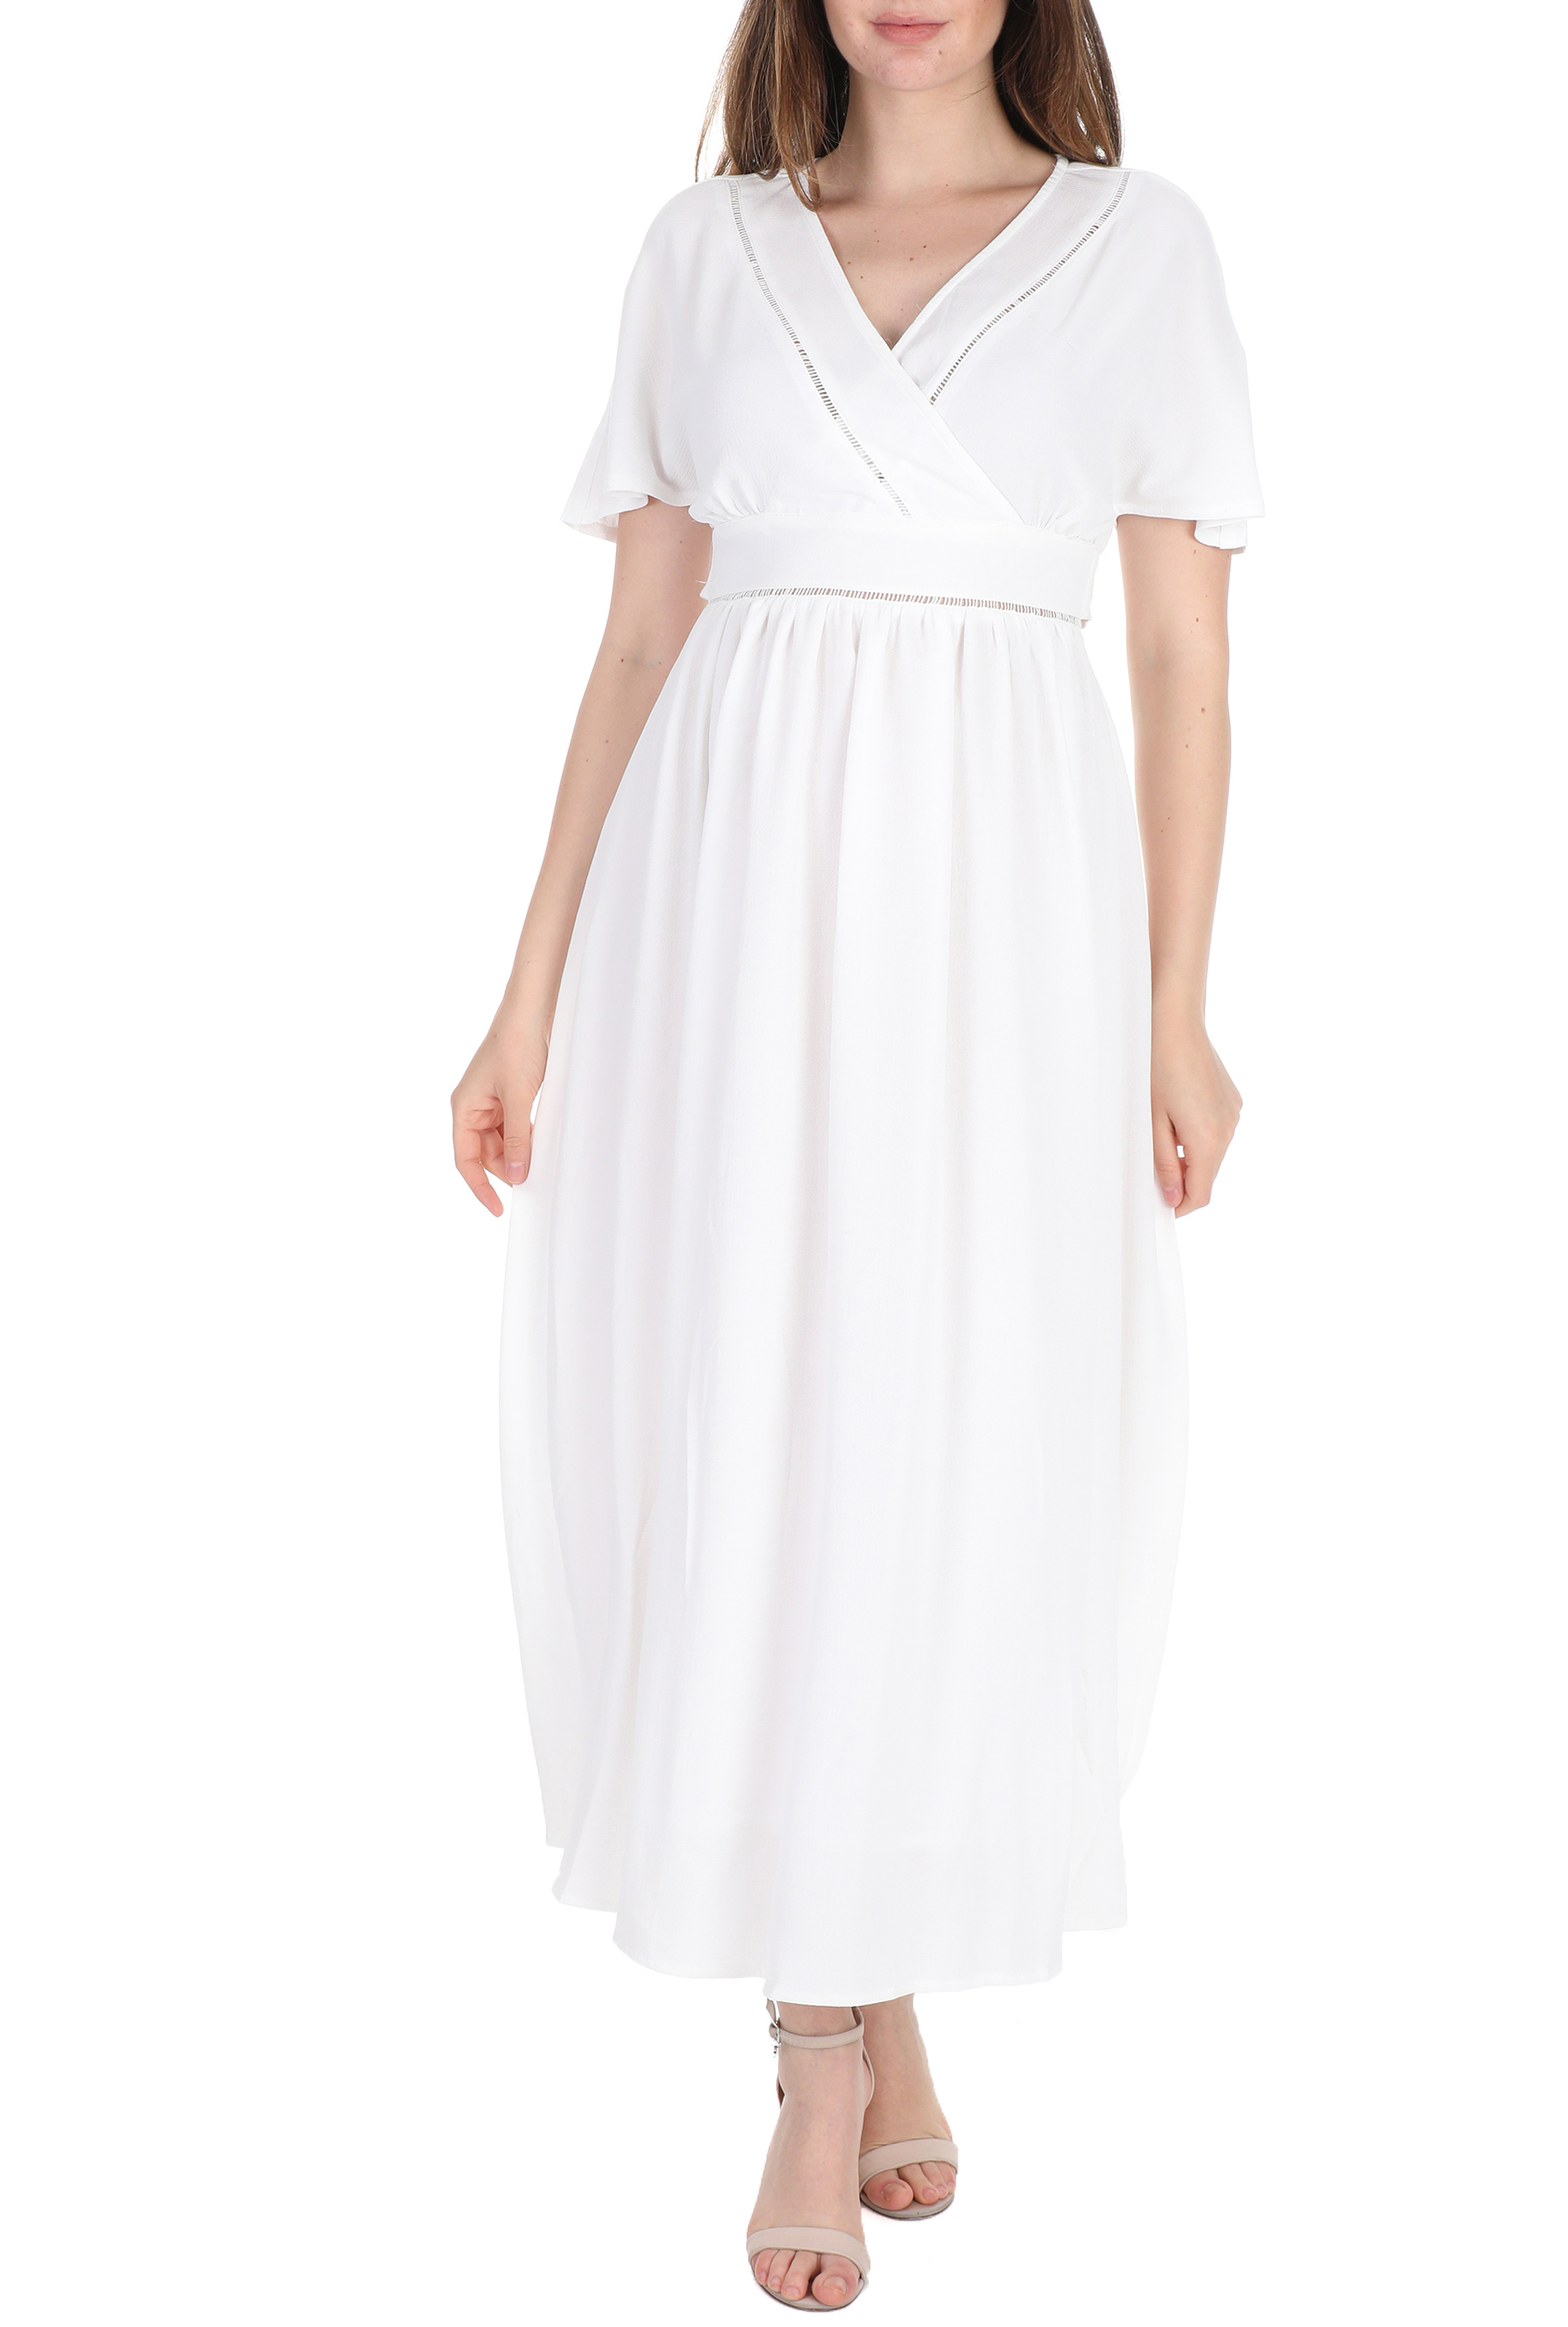 Γυναικεία/Ρούχα/Φορέματα/Μάξι MOLLY BRACKEN - Γυναικείο μακρύ φόρεμα MOLLY BRACKEN λευκό